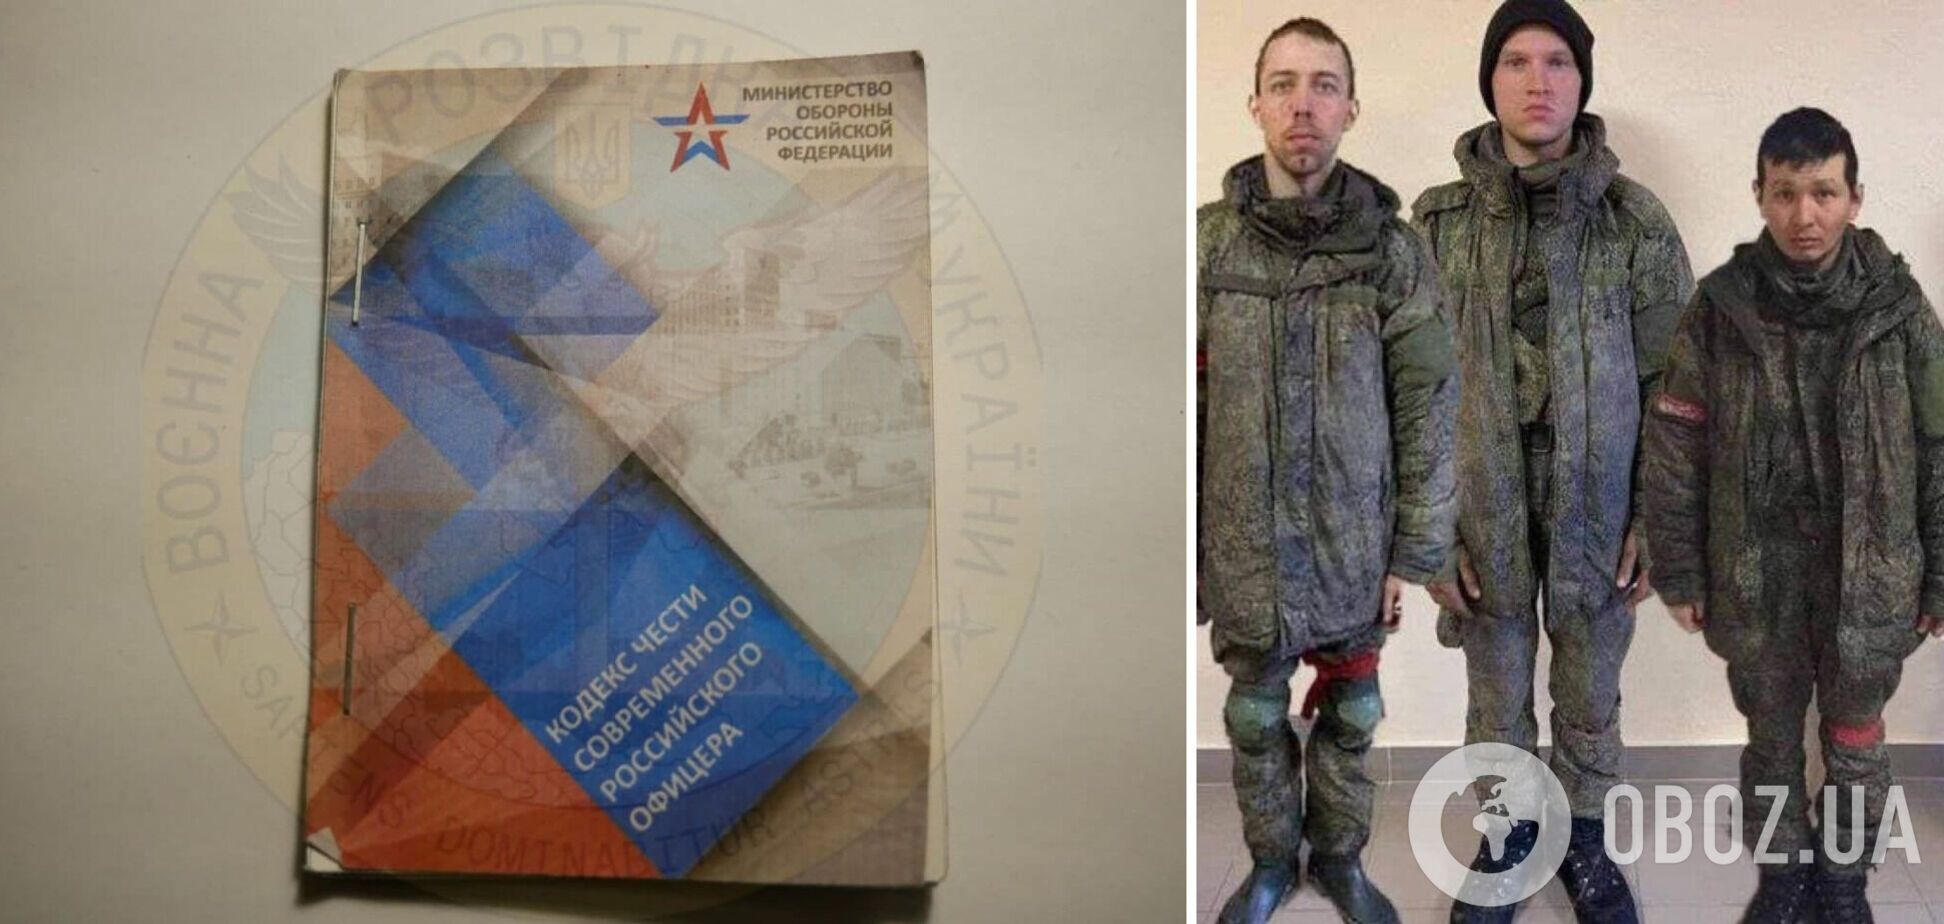 'Російський офіцер готовий померти без імені': у мережі показали методички, які роздавали окупантам перед війною. Фото